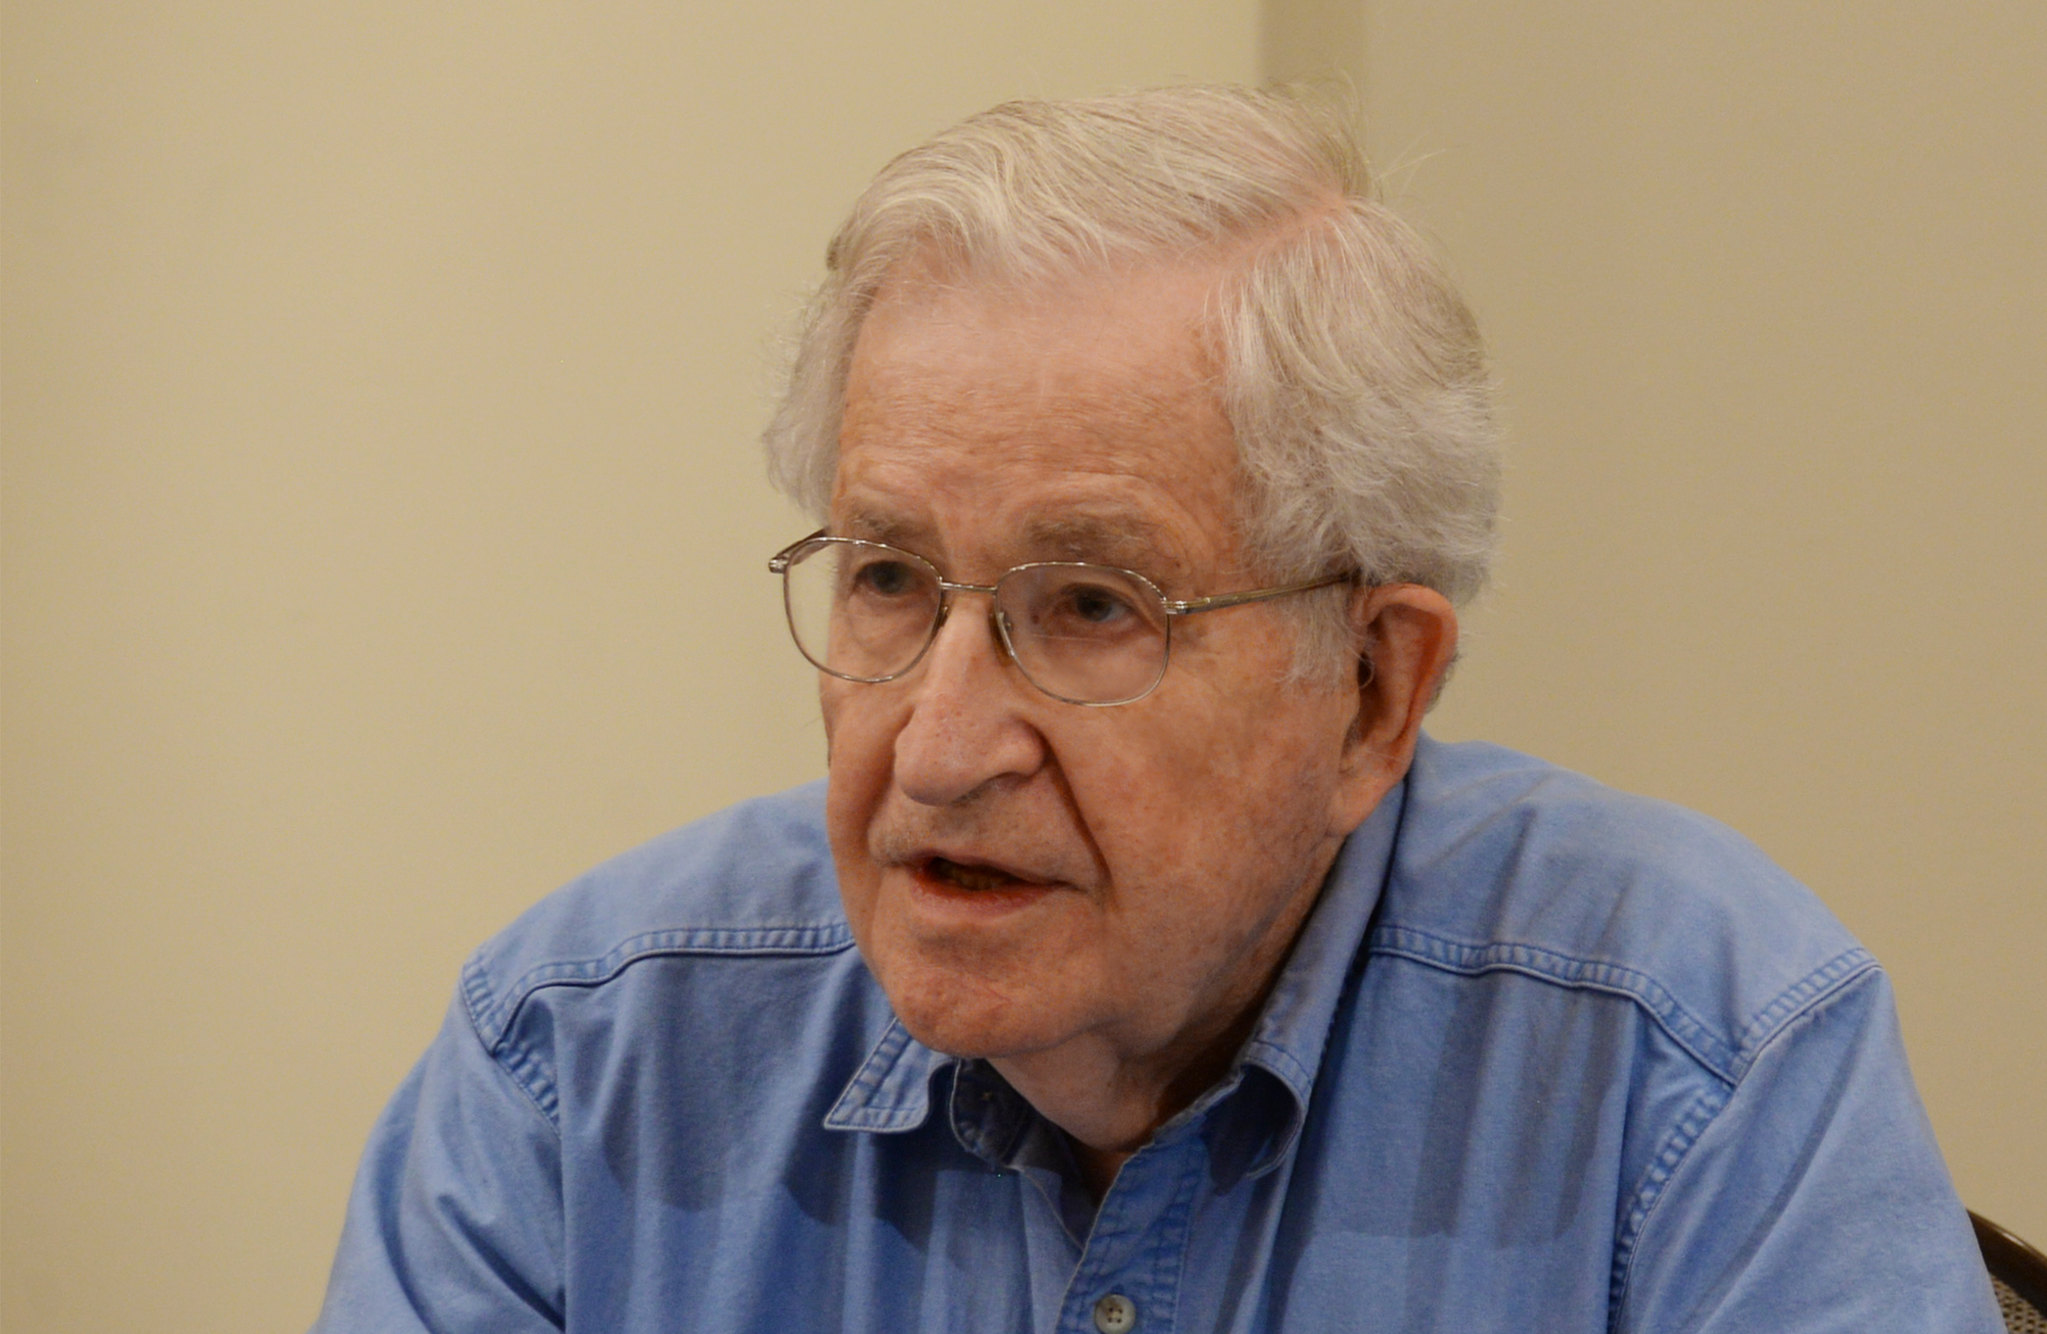 As ideias, visões e crenças de Noam Chomsky